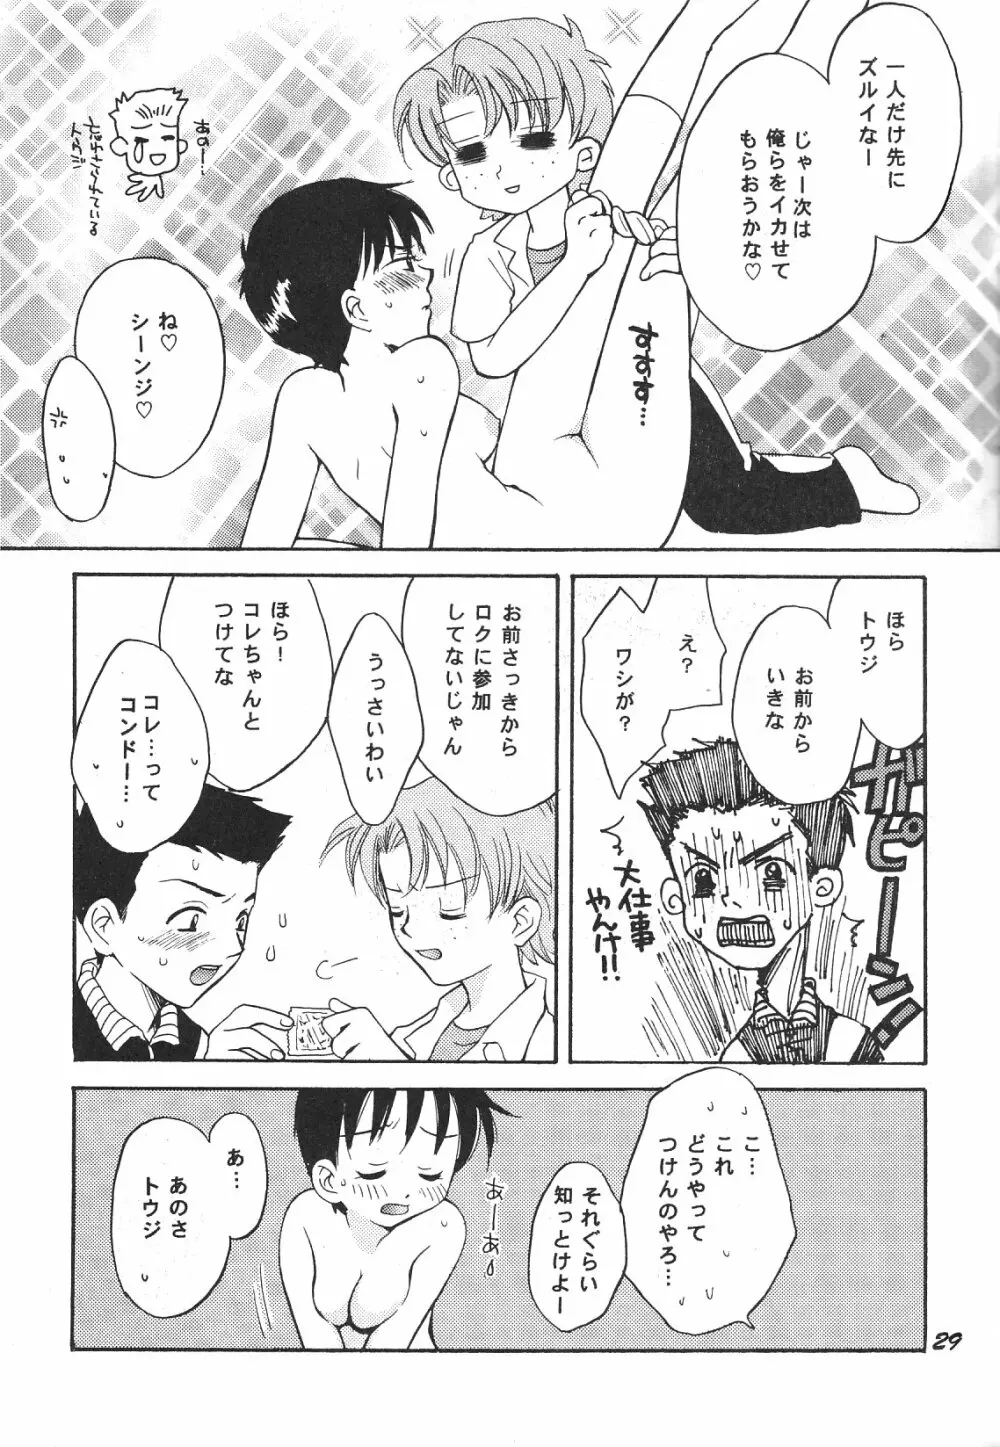 Maniac Juice 女シンジ再録集 '96-'99 - page29